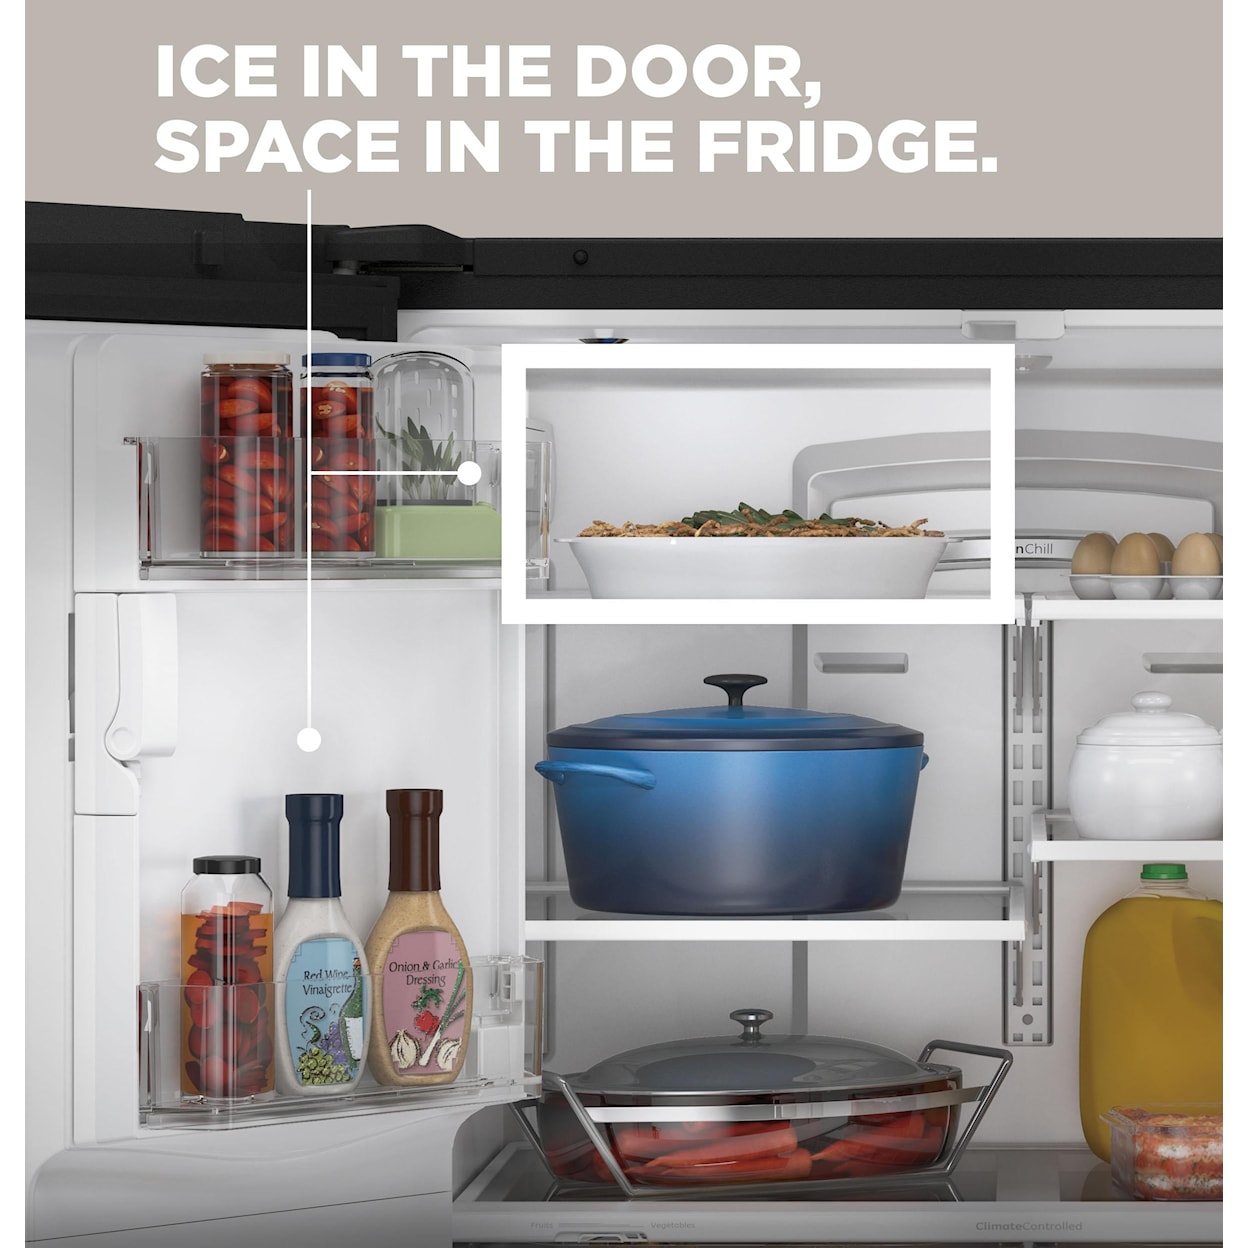 GE Appliances Refrigerators French Door Freestanding Refrigerator